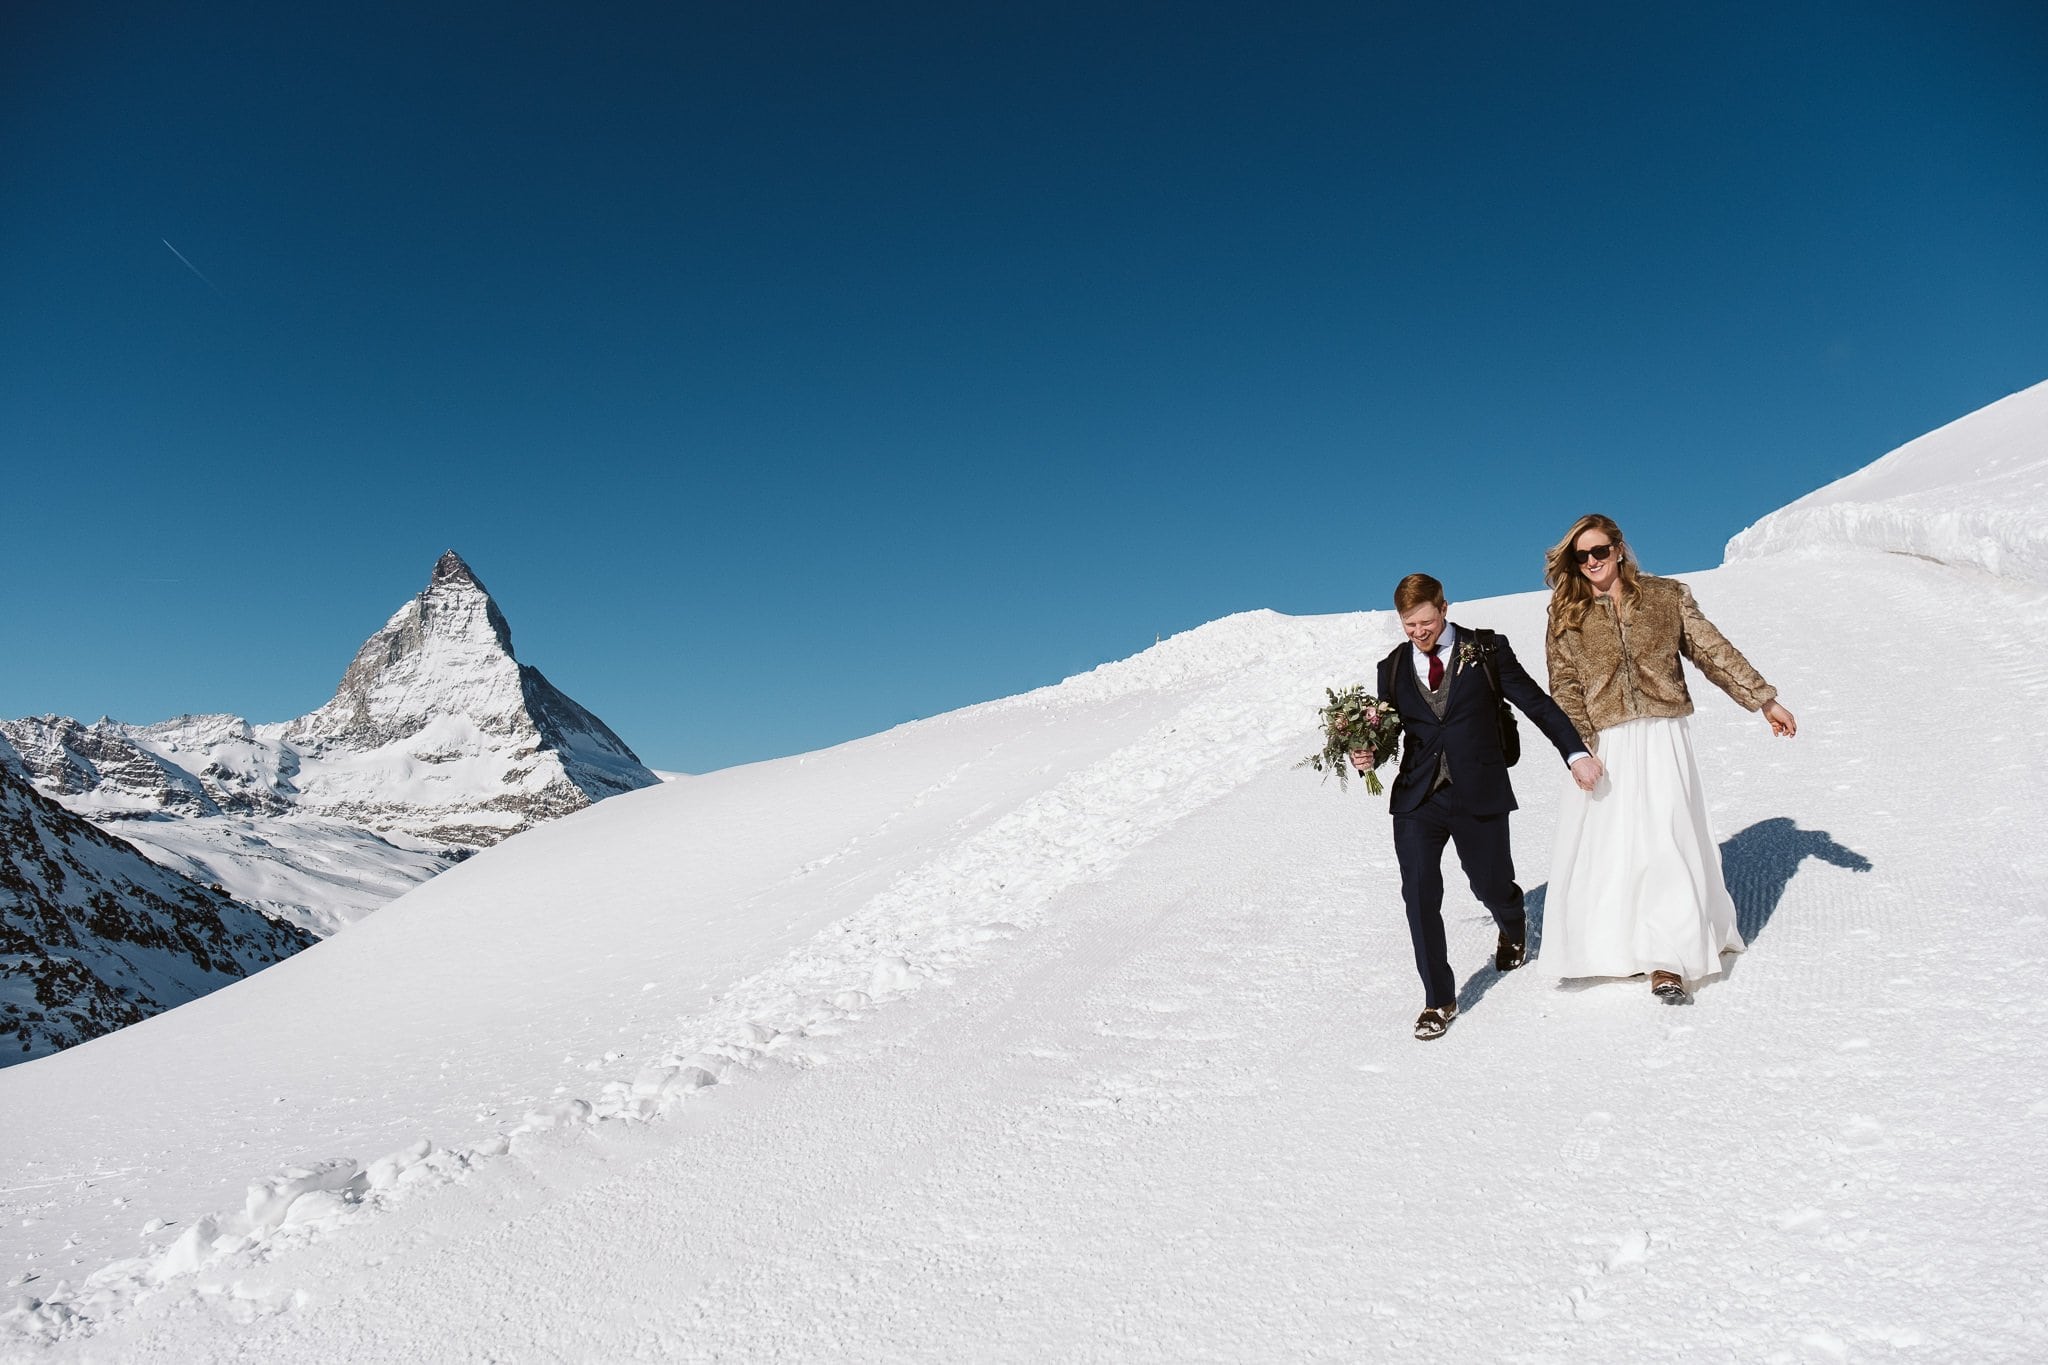 Matterhorn elopement in Switzerland, adventure elopement in winter